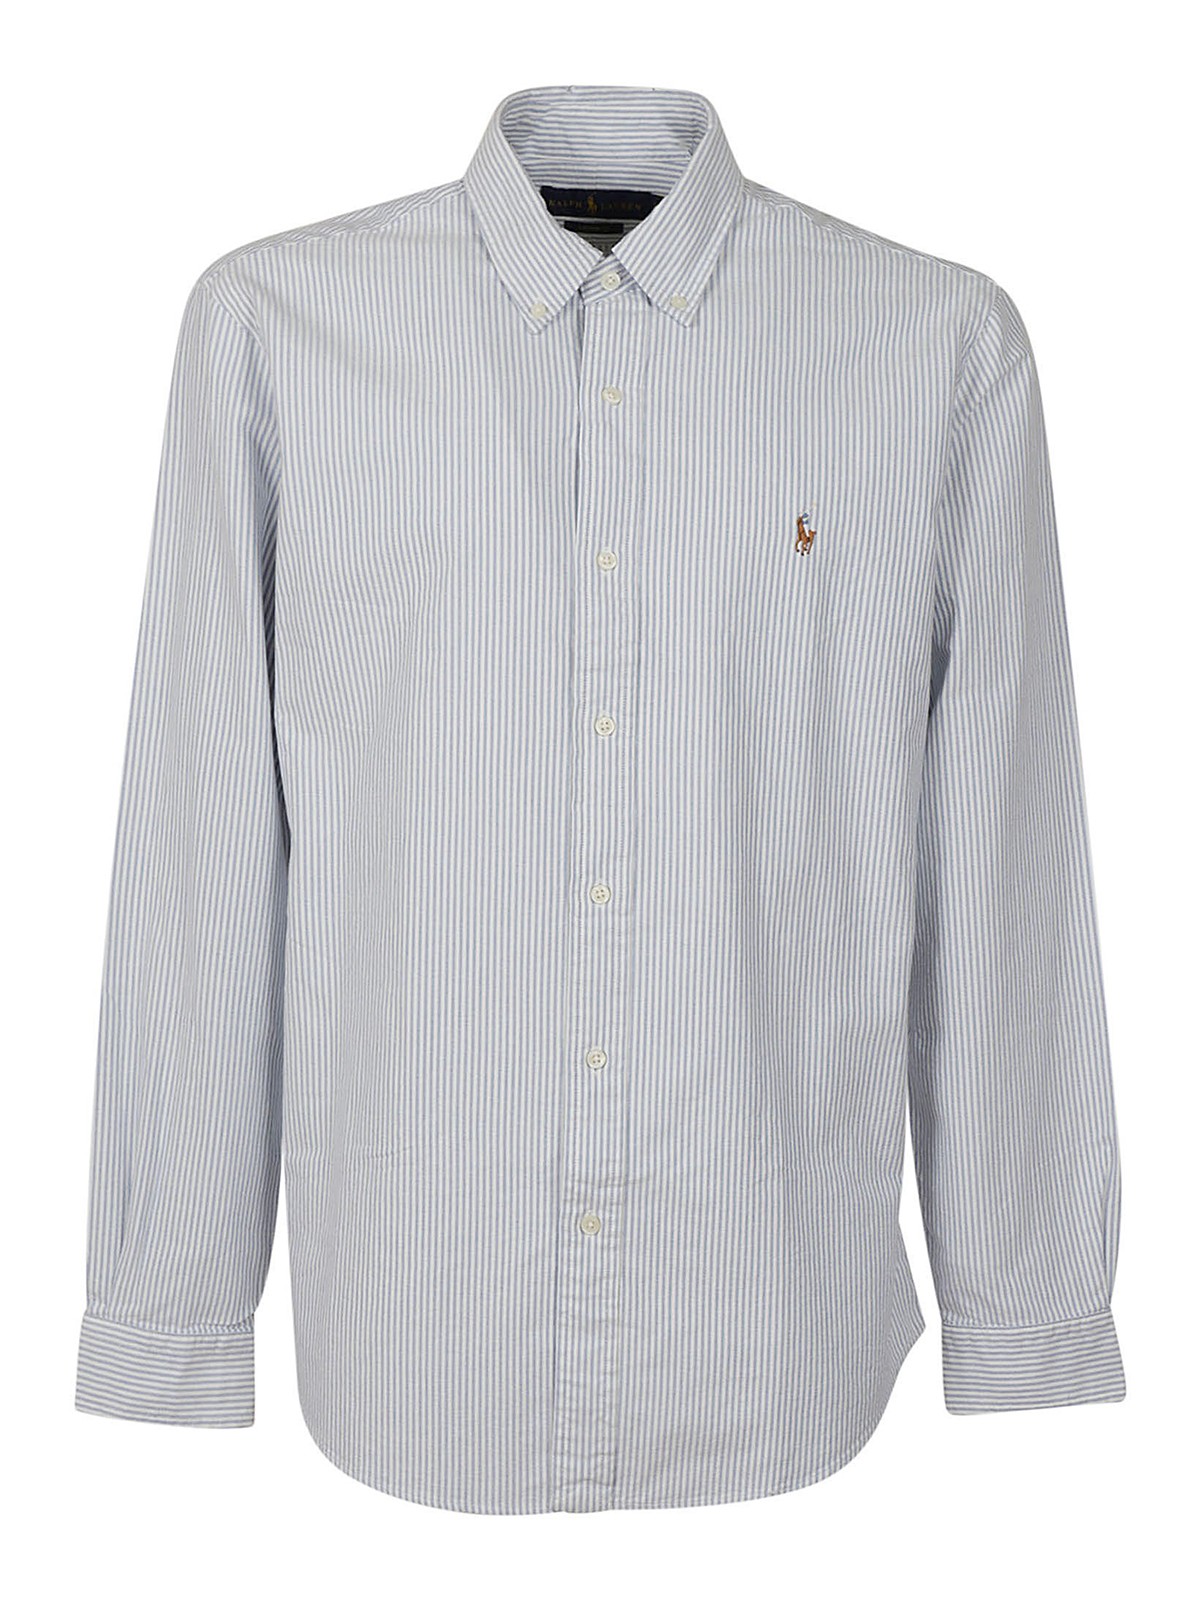 Polo Ralph Lauren Long Sleeve Shirt In Blue